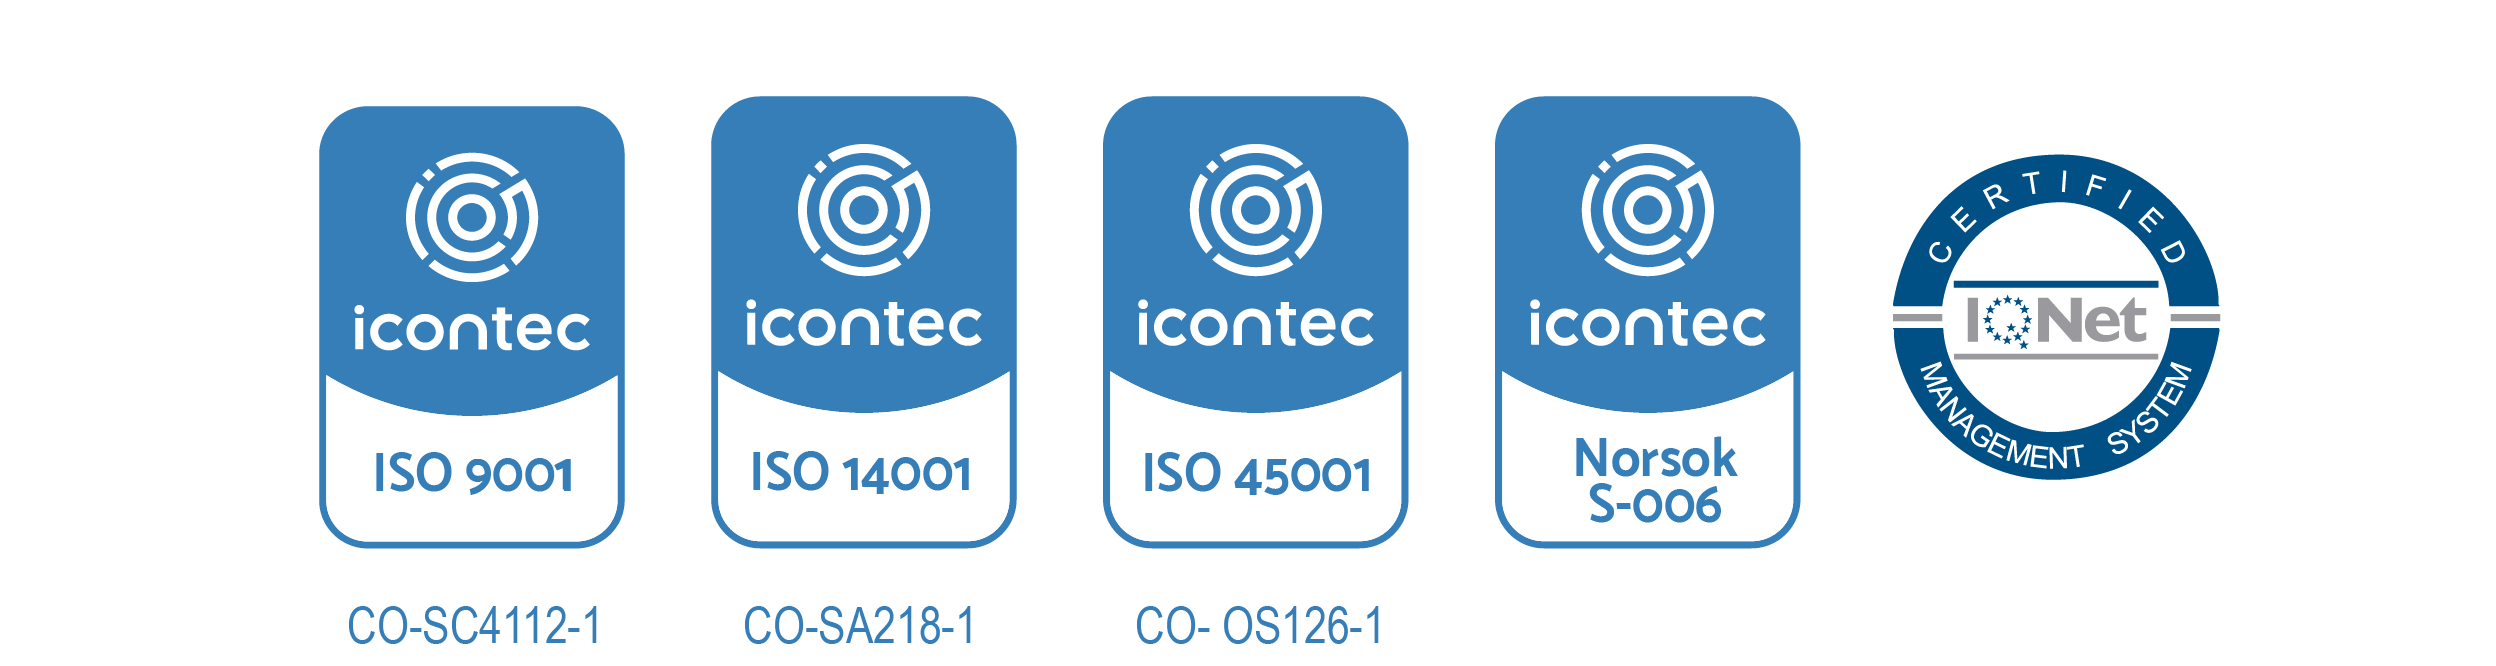 icontec_inemec_certificaciones